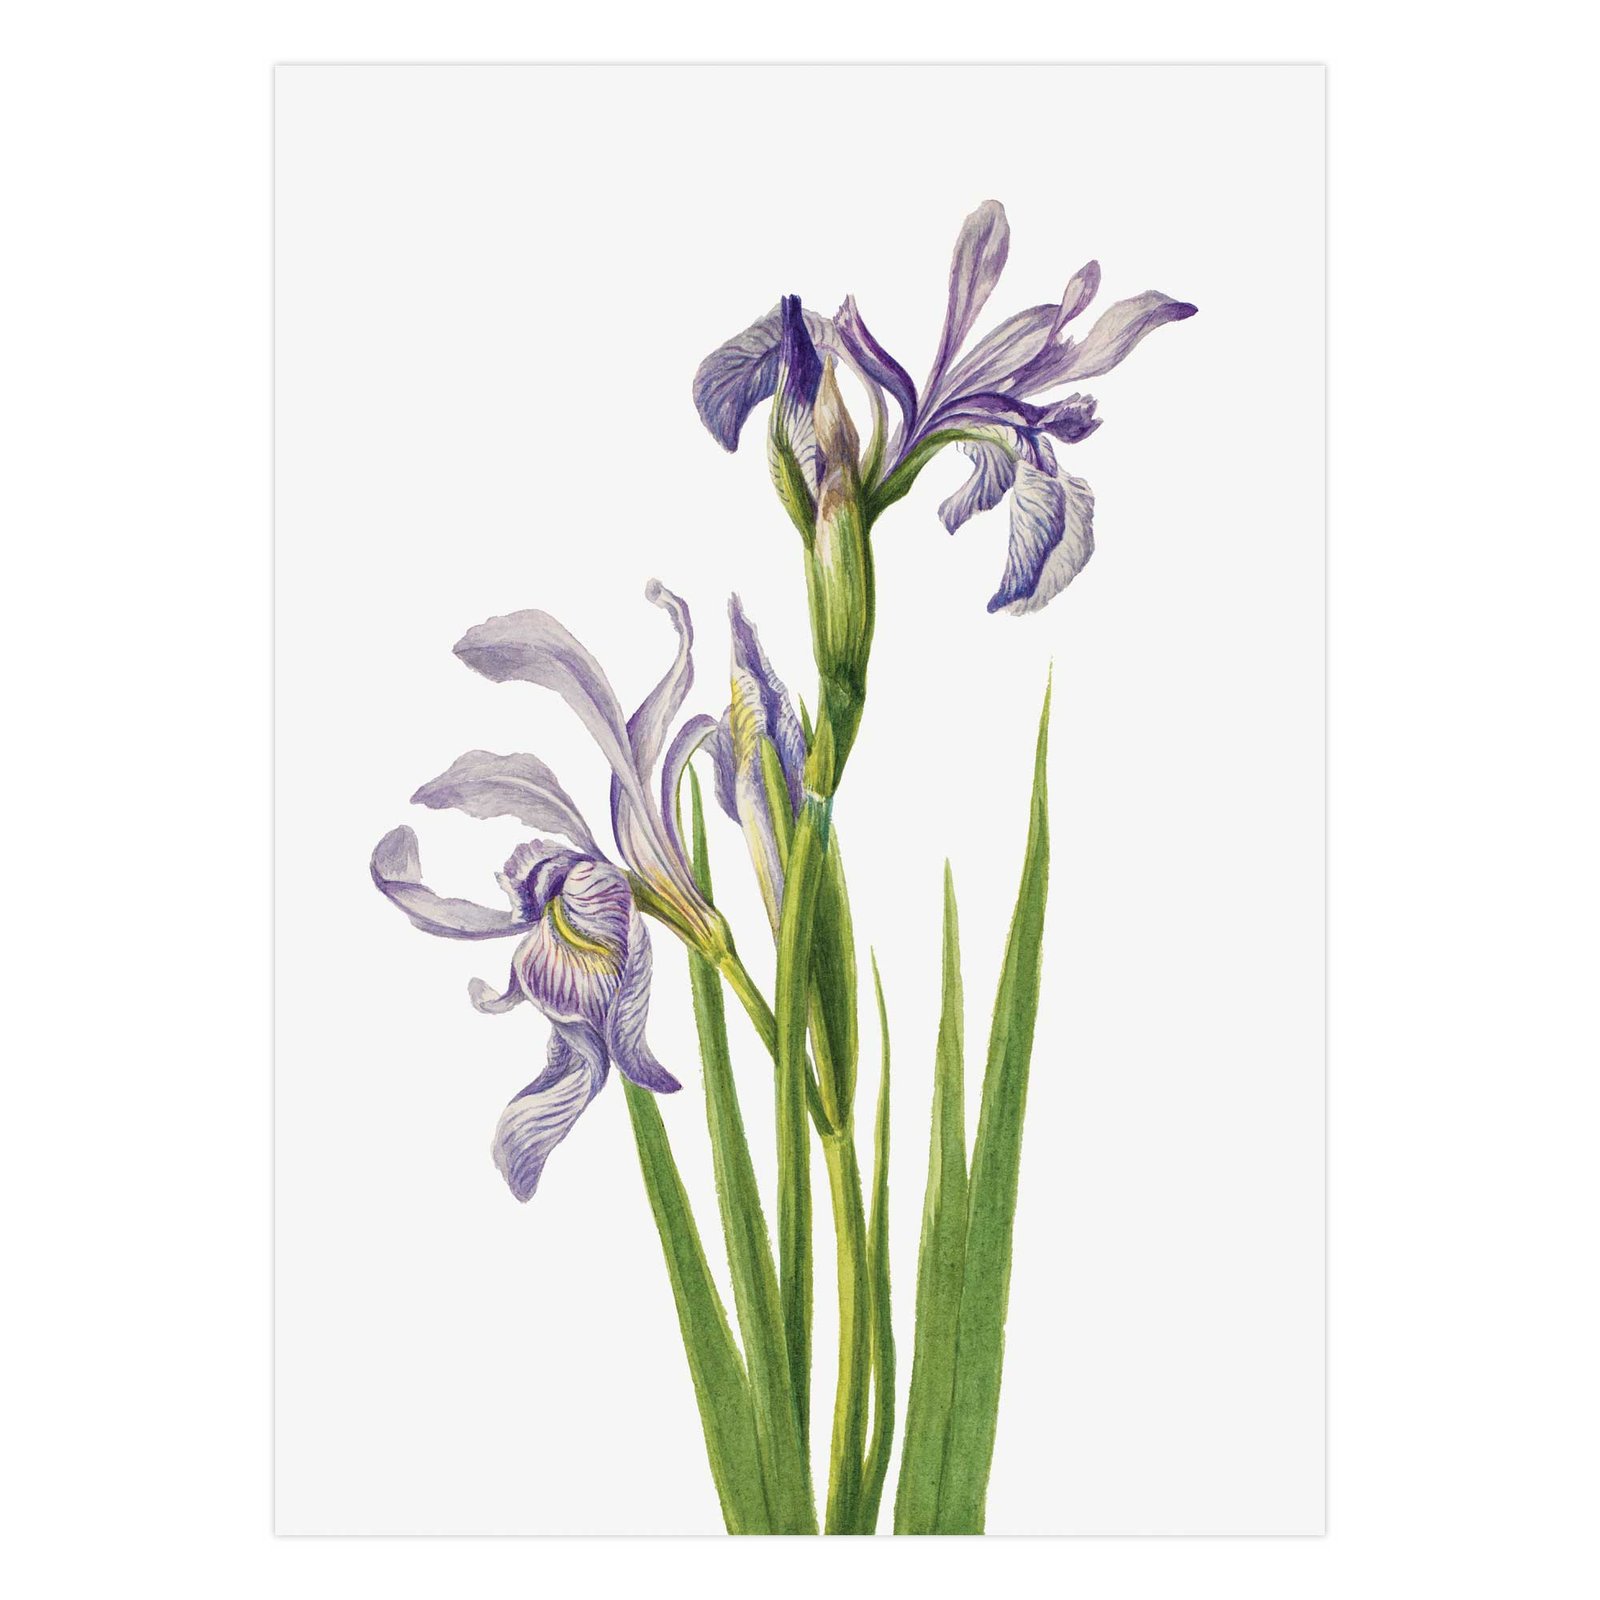 259-paveikslai pirkti - Vakarų mėlynasis irisas - Mary Vaux Walcott